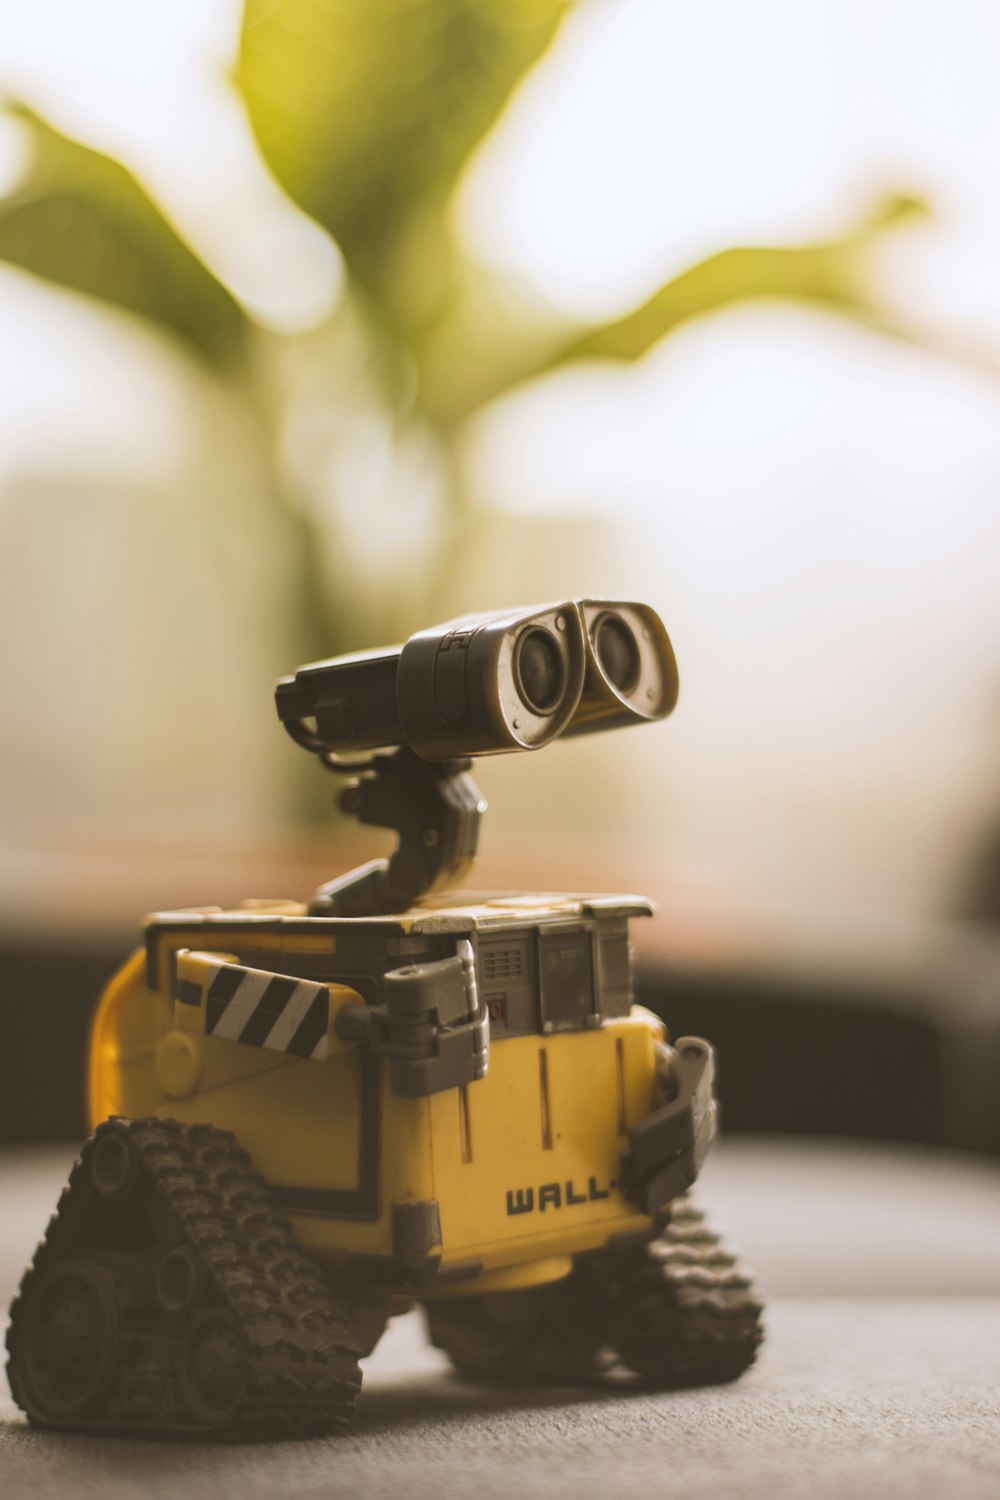 Wall-E robot